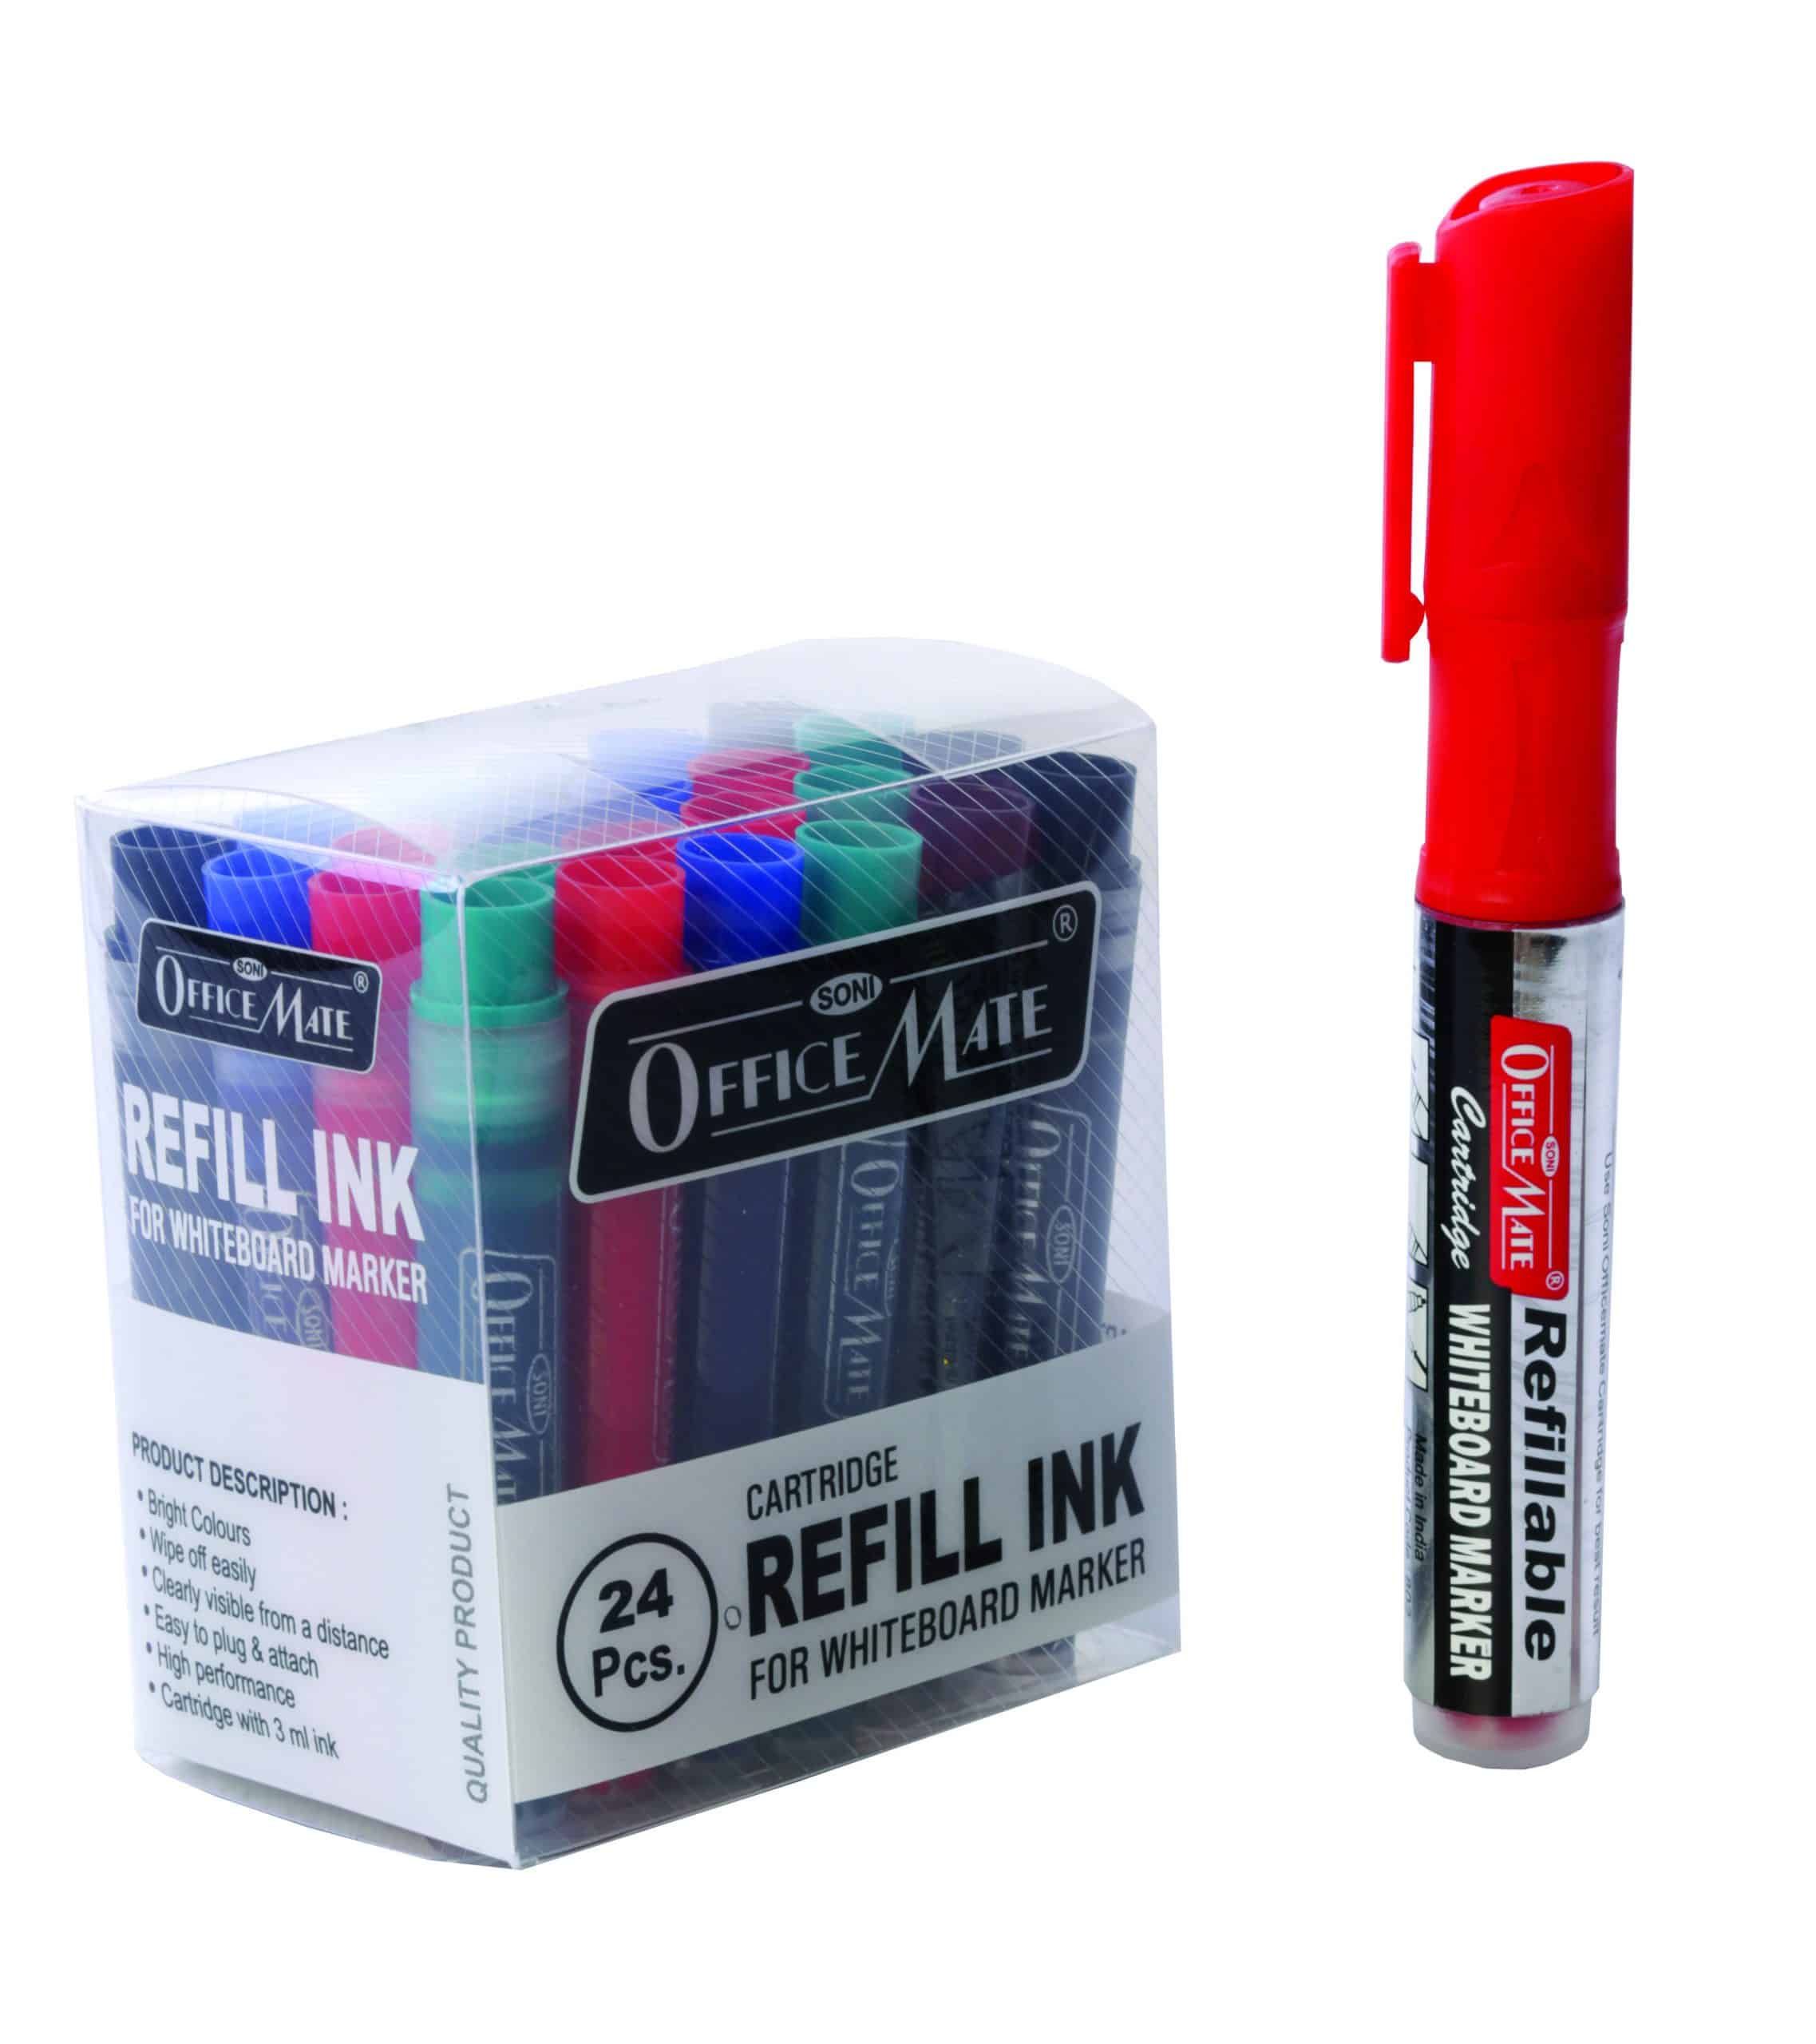 Refillable Cartridge for whiteboard marker